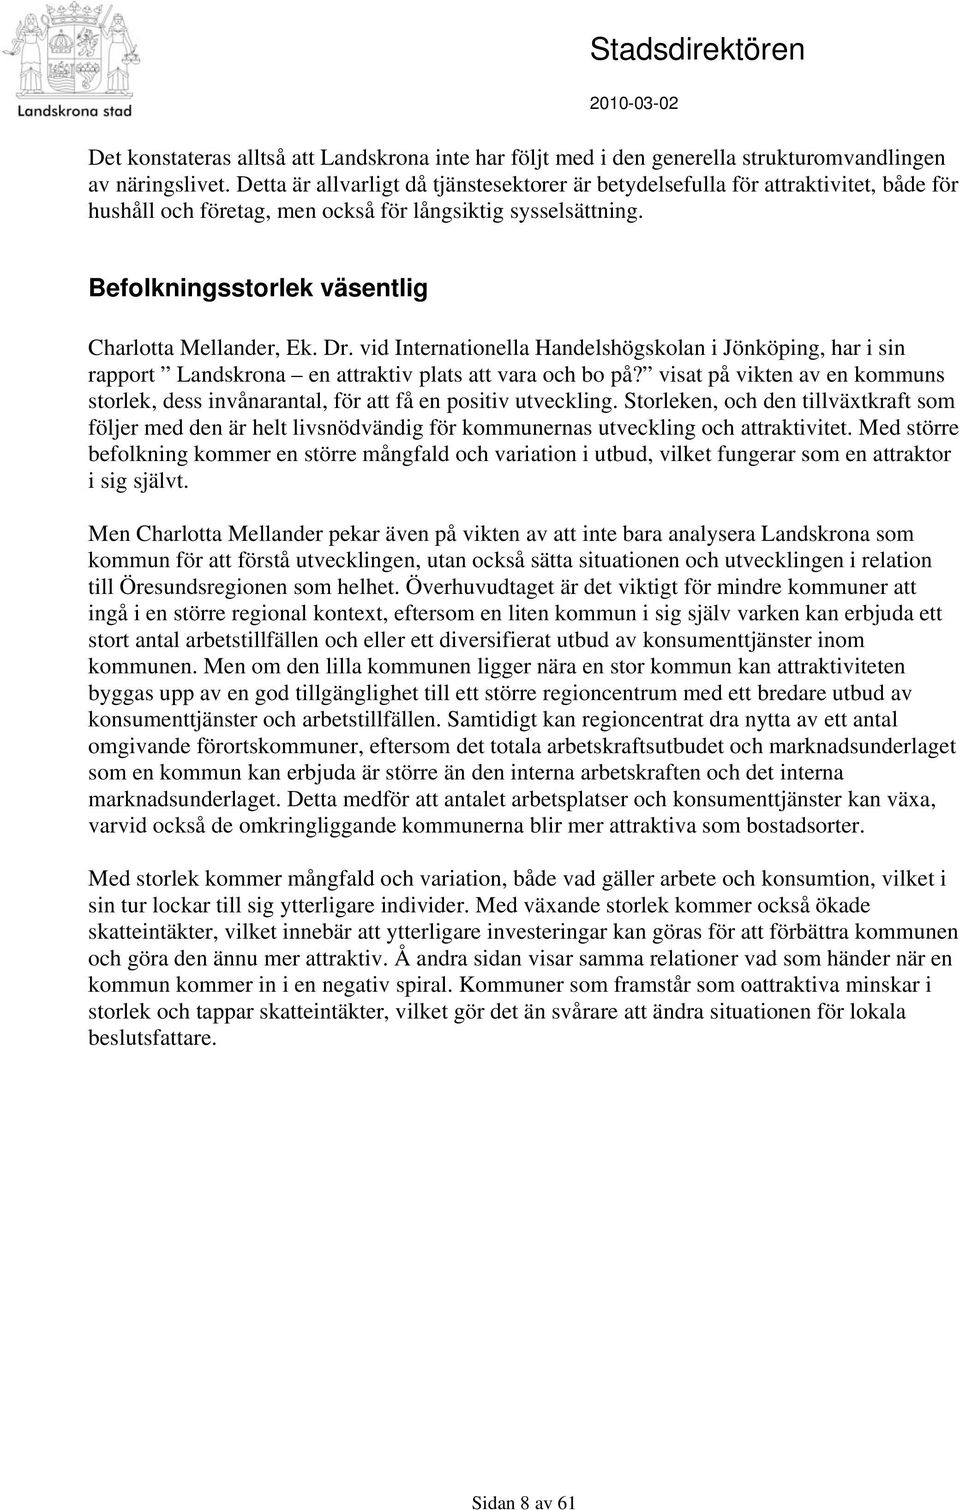 Dr. vid Internationella Handelshögskolan i Jönköping, har i sin rapport Landskrona en attraktiv plats att vara och bo på?